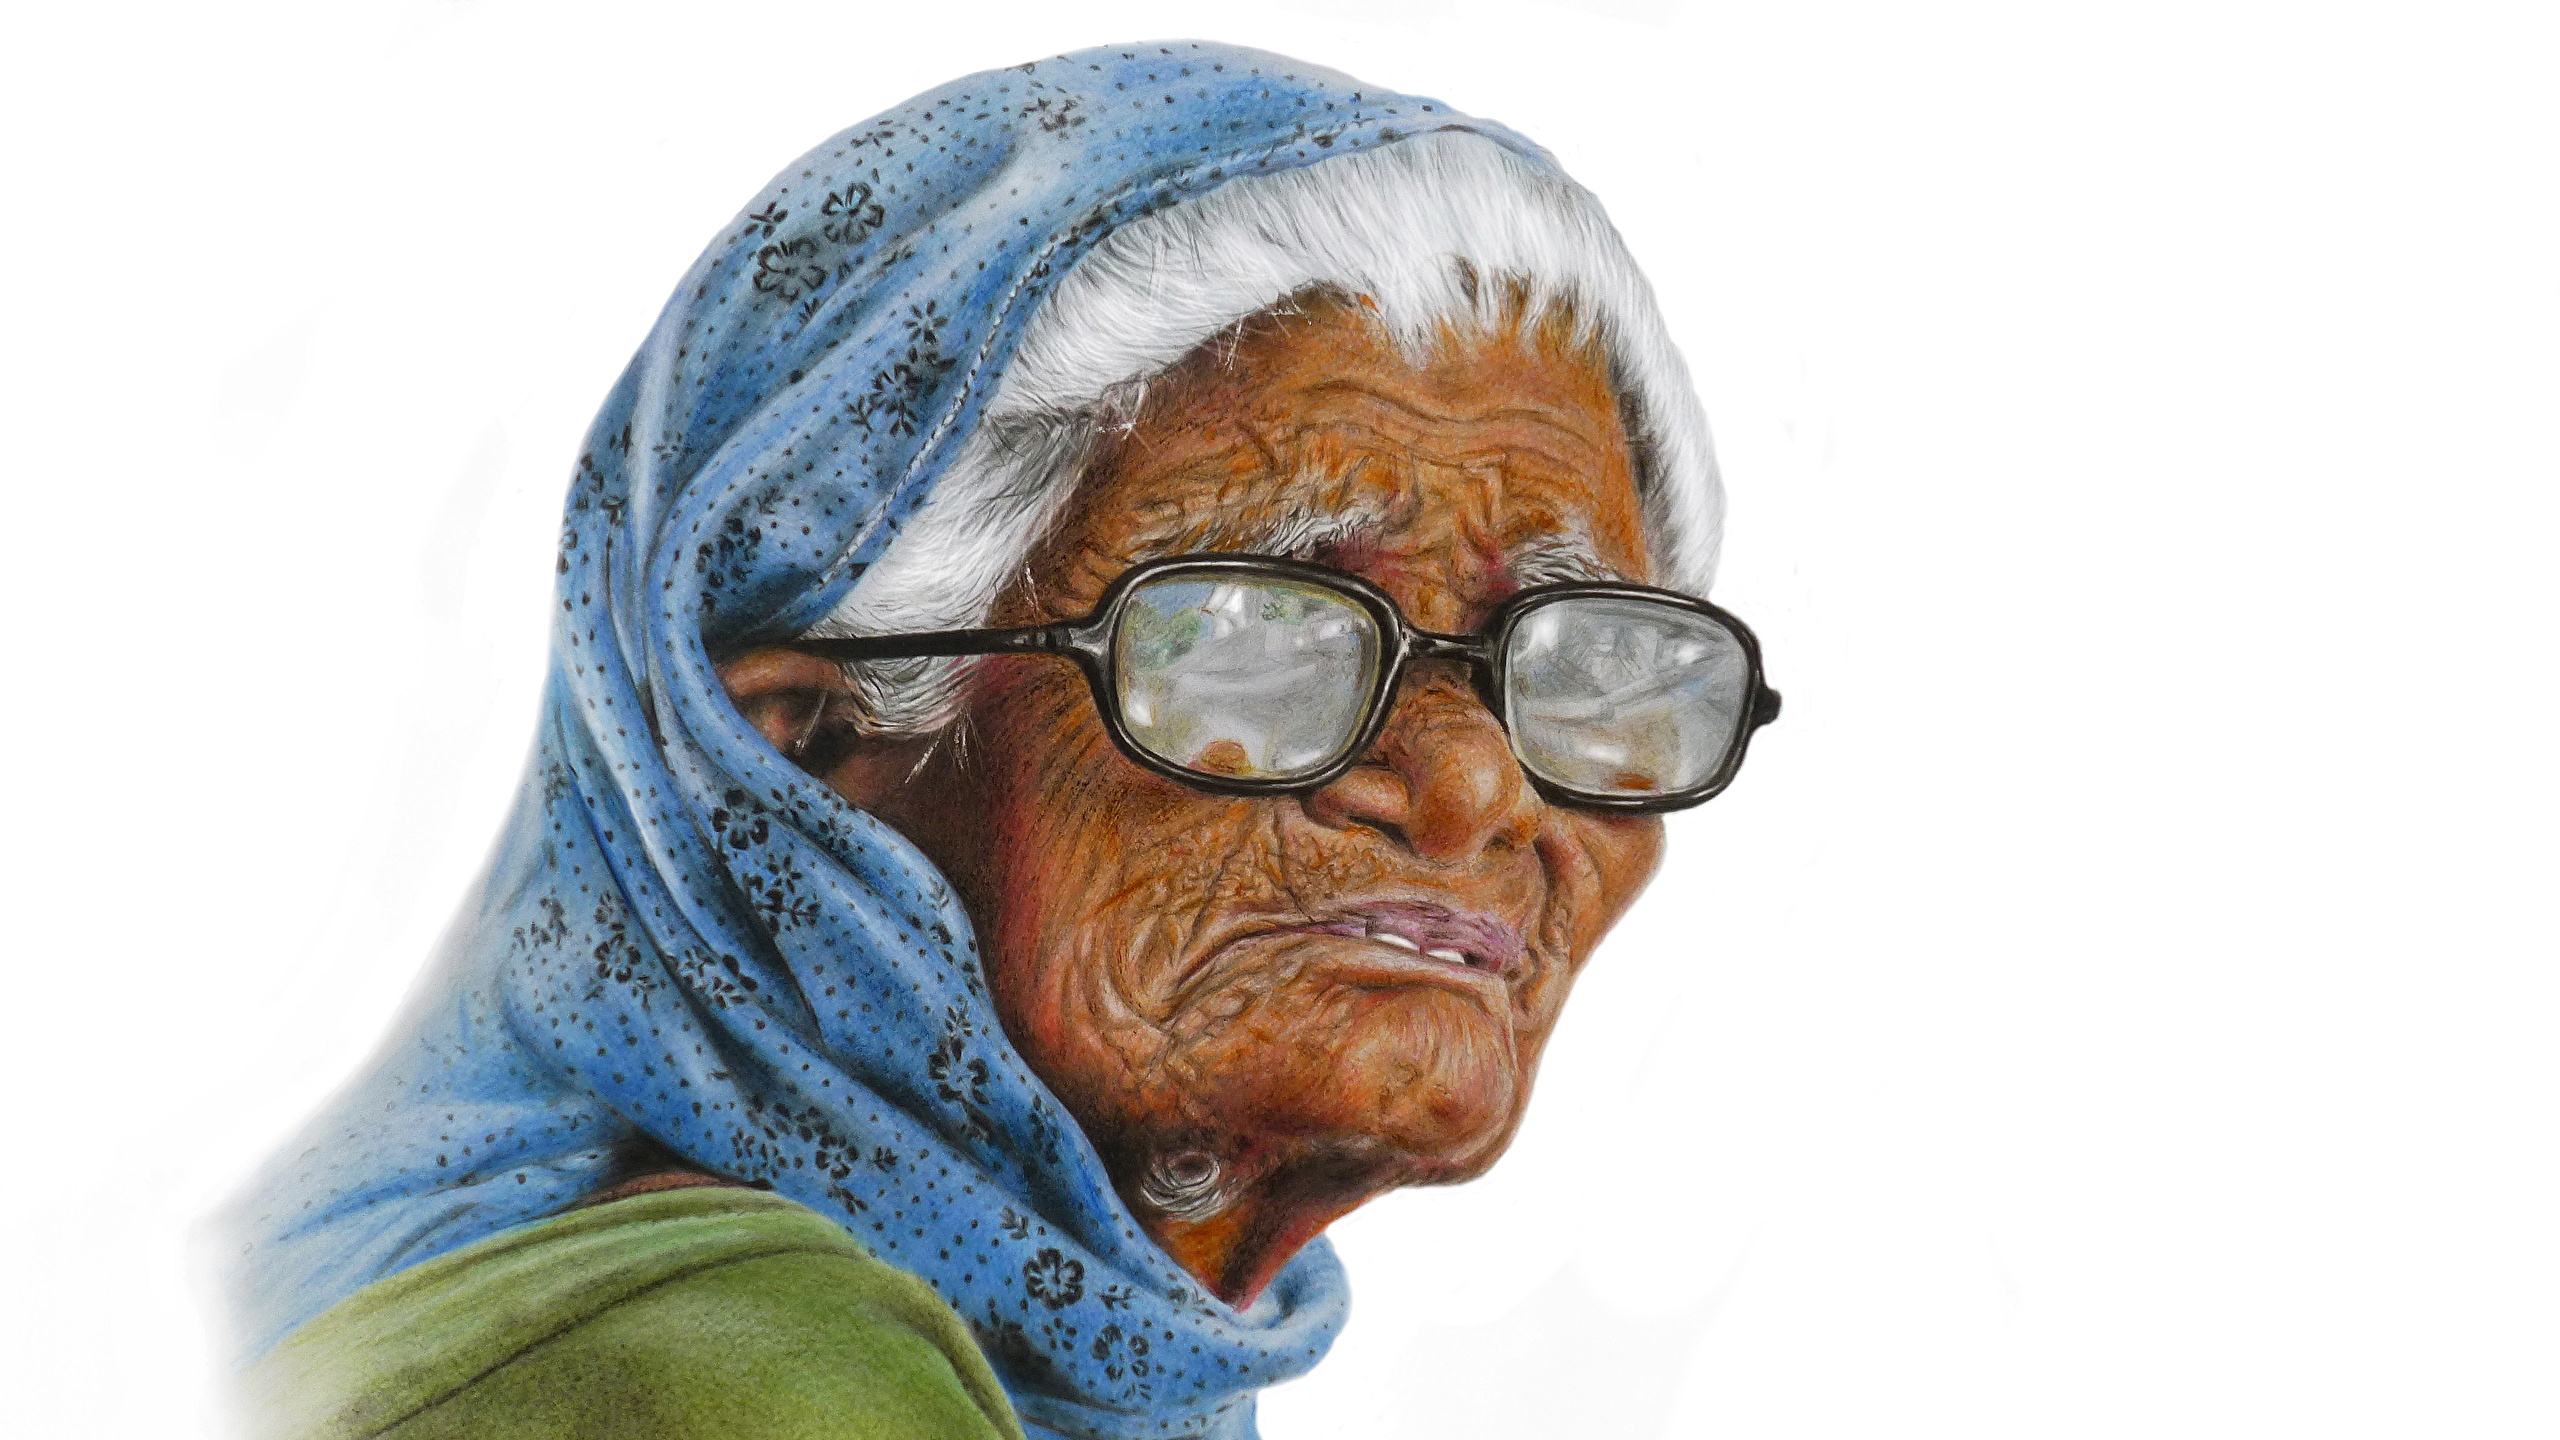 壁紙 2560x1440 絵画 描かれた壁紙 老婦人 眼鏡 白背景 ダウンロード 写真